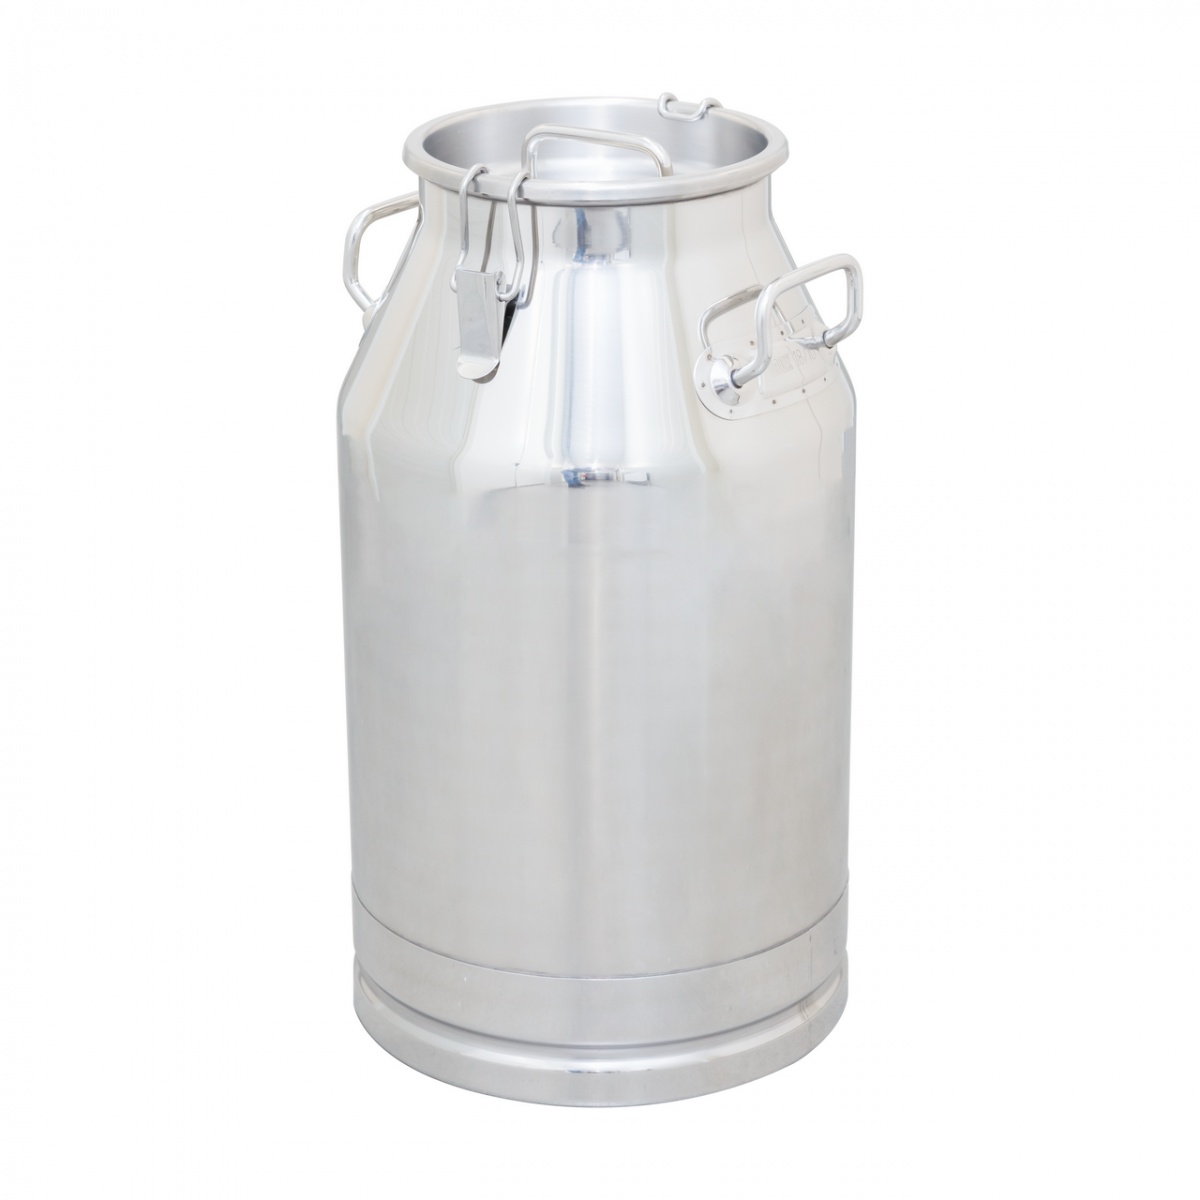 Inox tejhordó kondér, csatos fedéllel, 40 liter